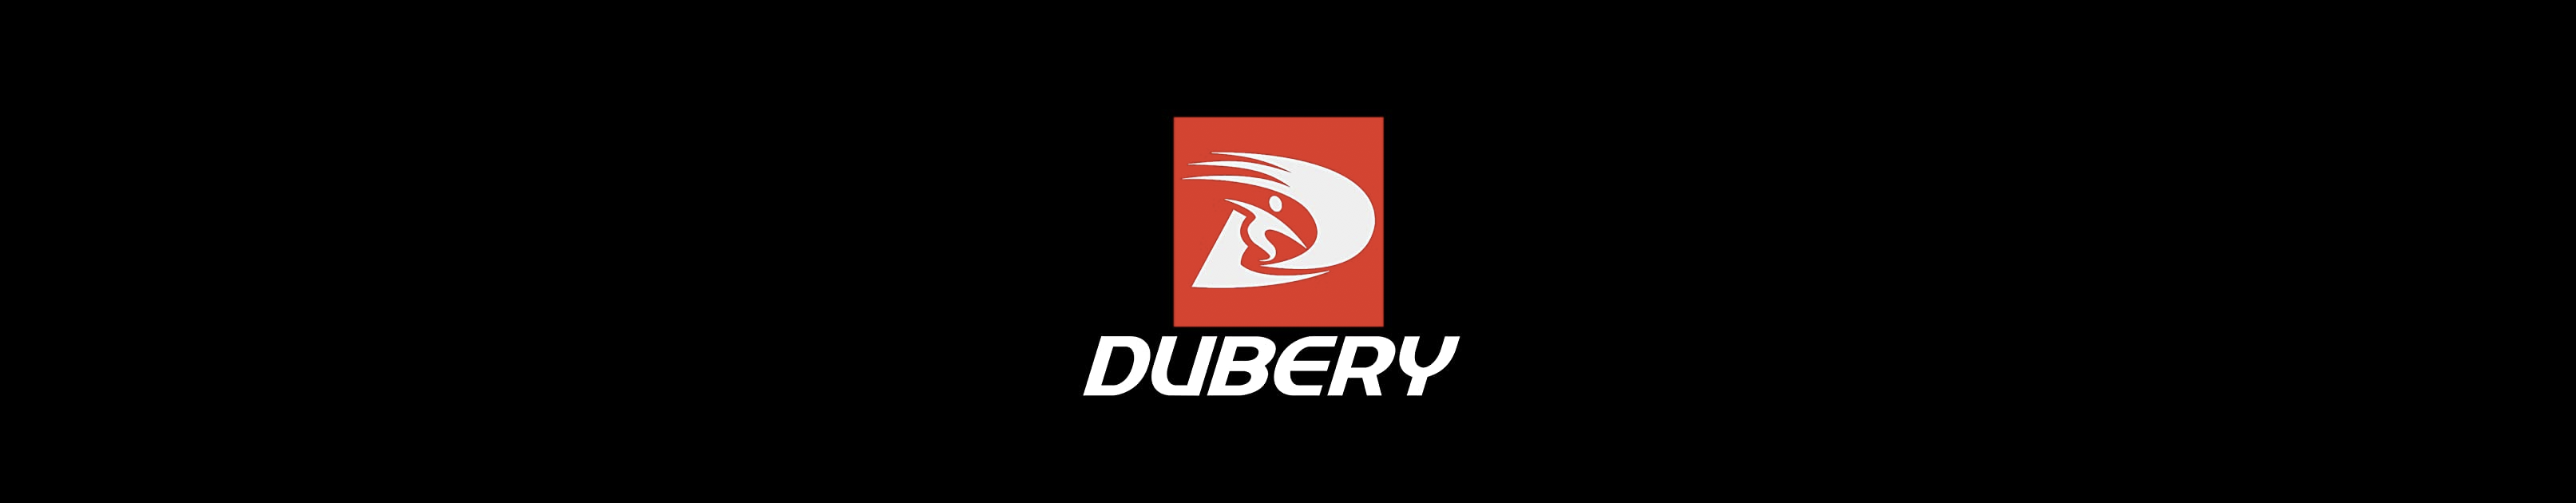 Dubery-Marke.